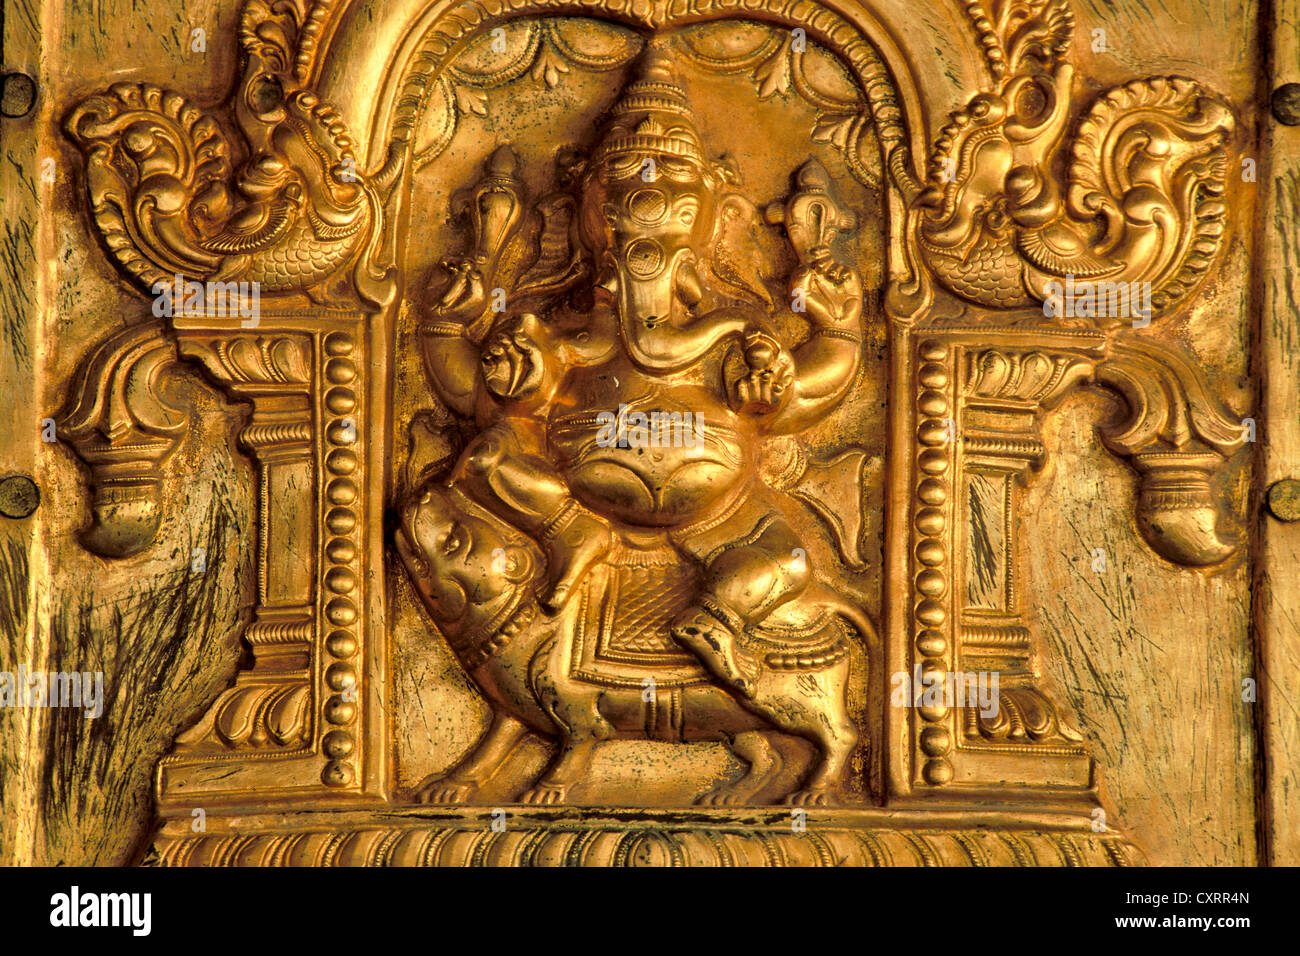 Dieu à tête d'éléphant hindou Ganesha, Ganesh ou Ganpati monté sur un relief doré, rat, Madurai, Tamil Nadu, Inde du Sud, Inde Banque D'Images